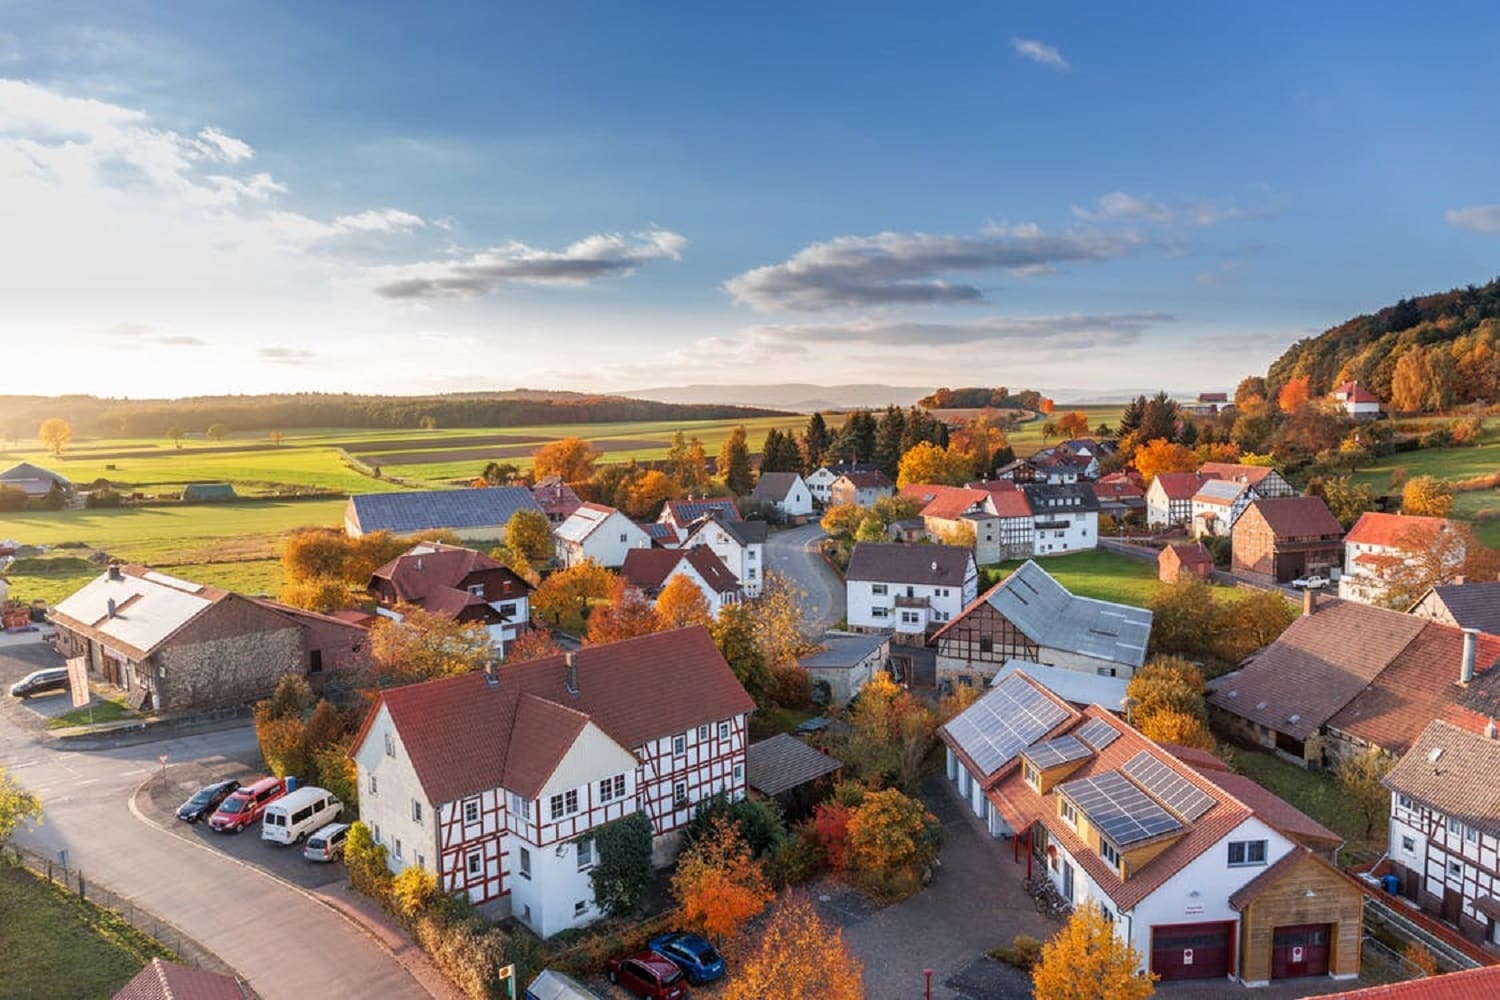 Aerial view of neighborhood in fall